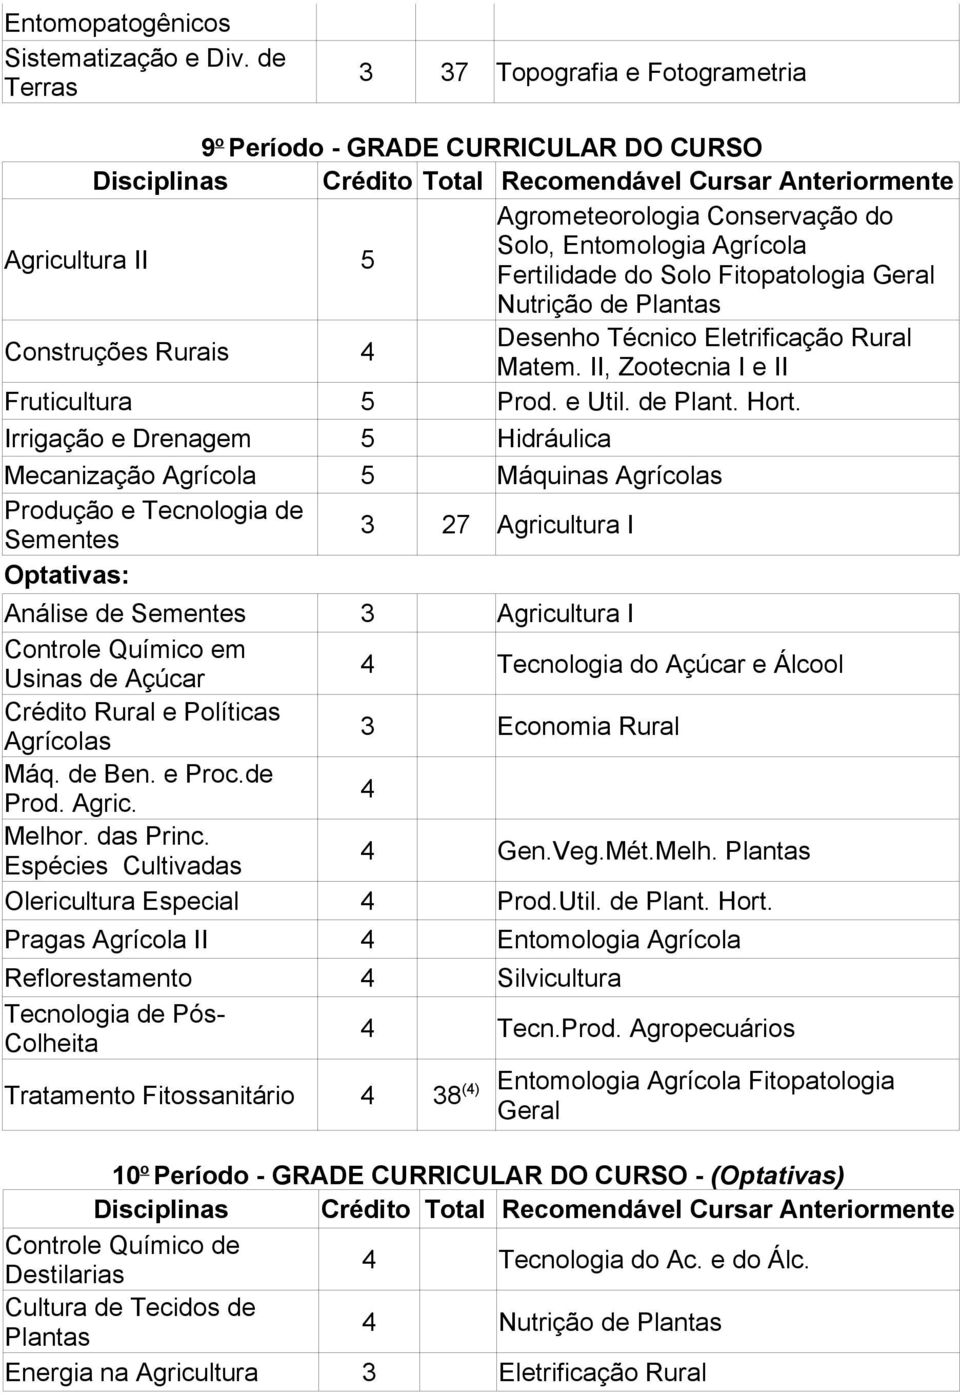 Nutrição de Plantas Construções Rurais 4 Desenho Técnico Eletrificação Rural Matem. II, Zootecnia I e II Fruticultura 5 Prod. e Util. de Plant. Hort.